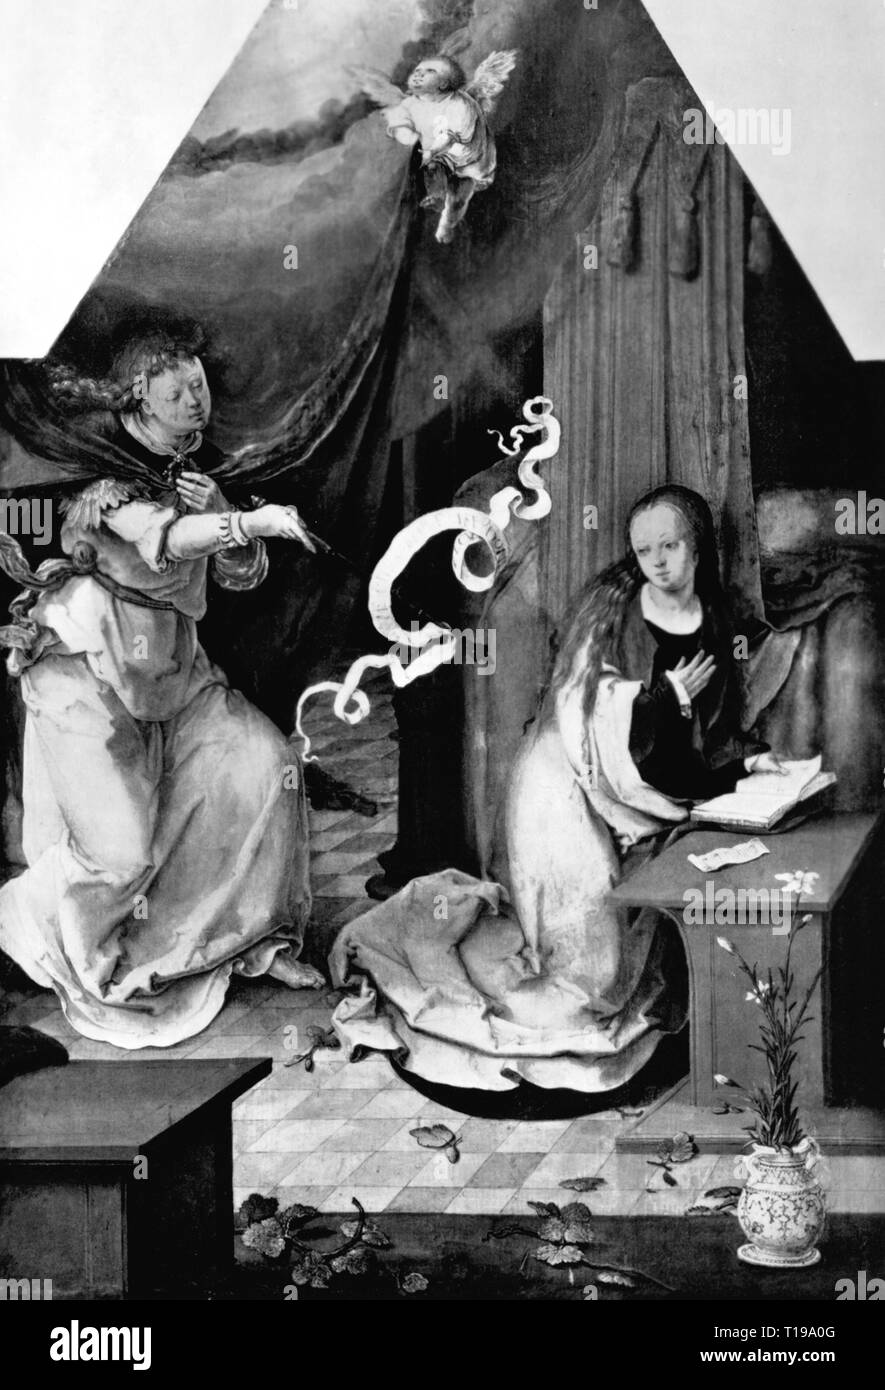 La religione, il cristianesimo, l'Annunciazione, "l'Annunciazione", pittura, da Lucas van Leyden (1494 - 1533), il primo terzo del secolo XVI, olio su pannello, 42 x 29 cm, old pinacotheca, Monaco di Baviera, artista del diritto d'autore non deve essere cancellata Foto Stock